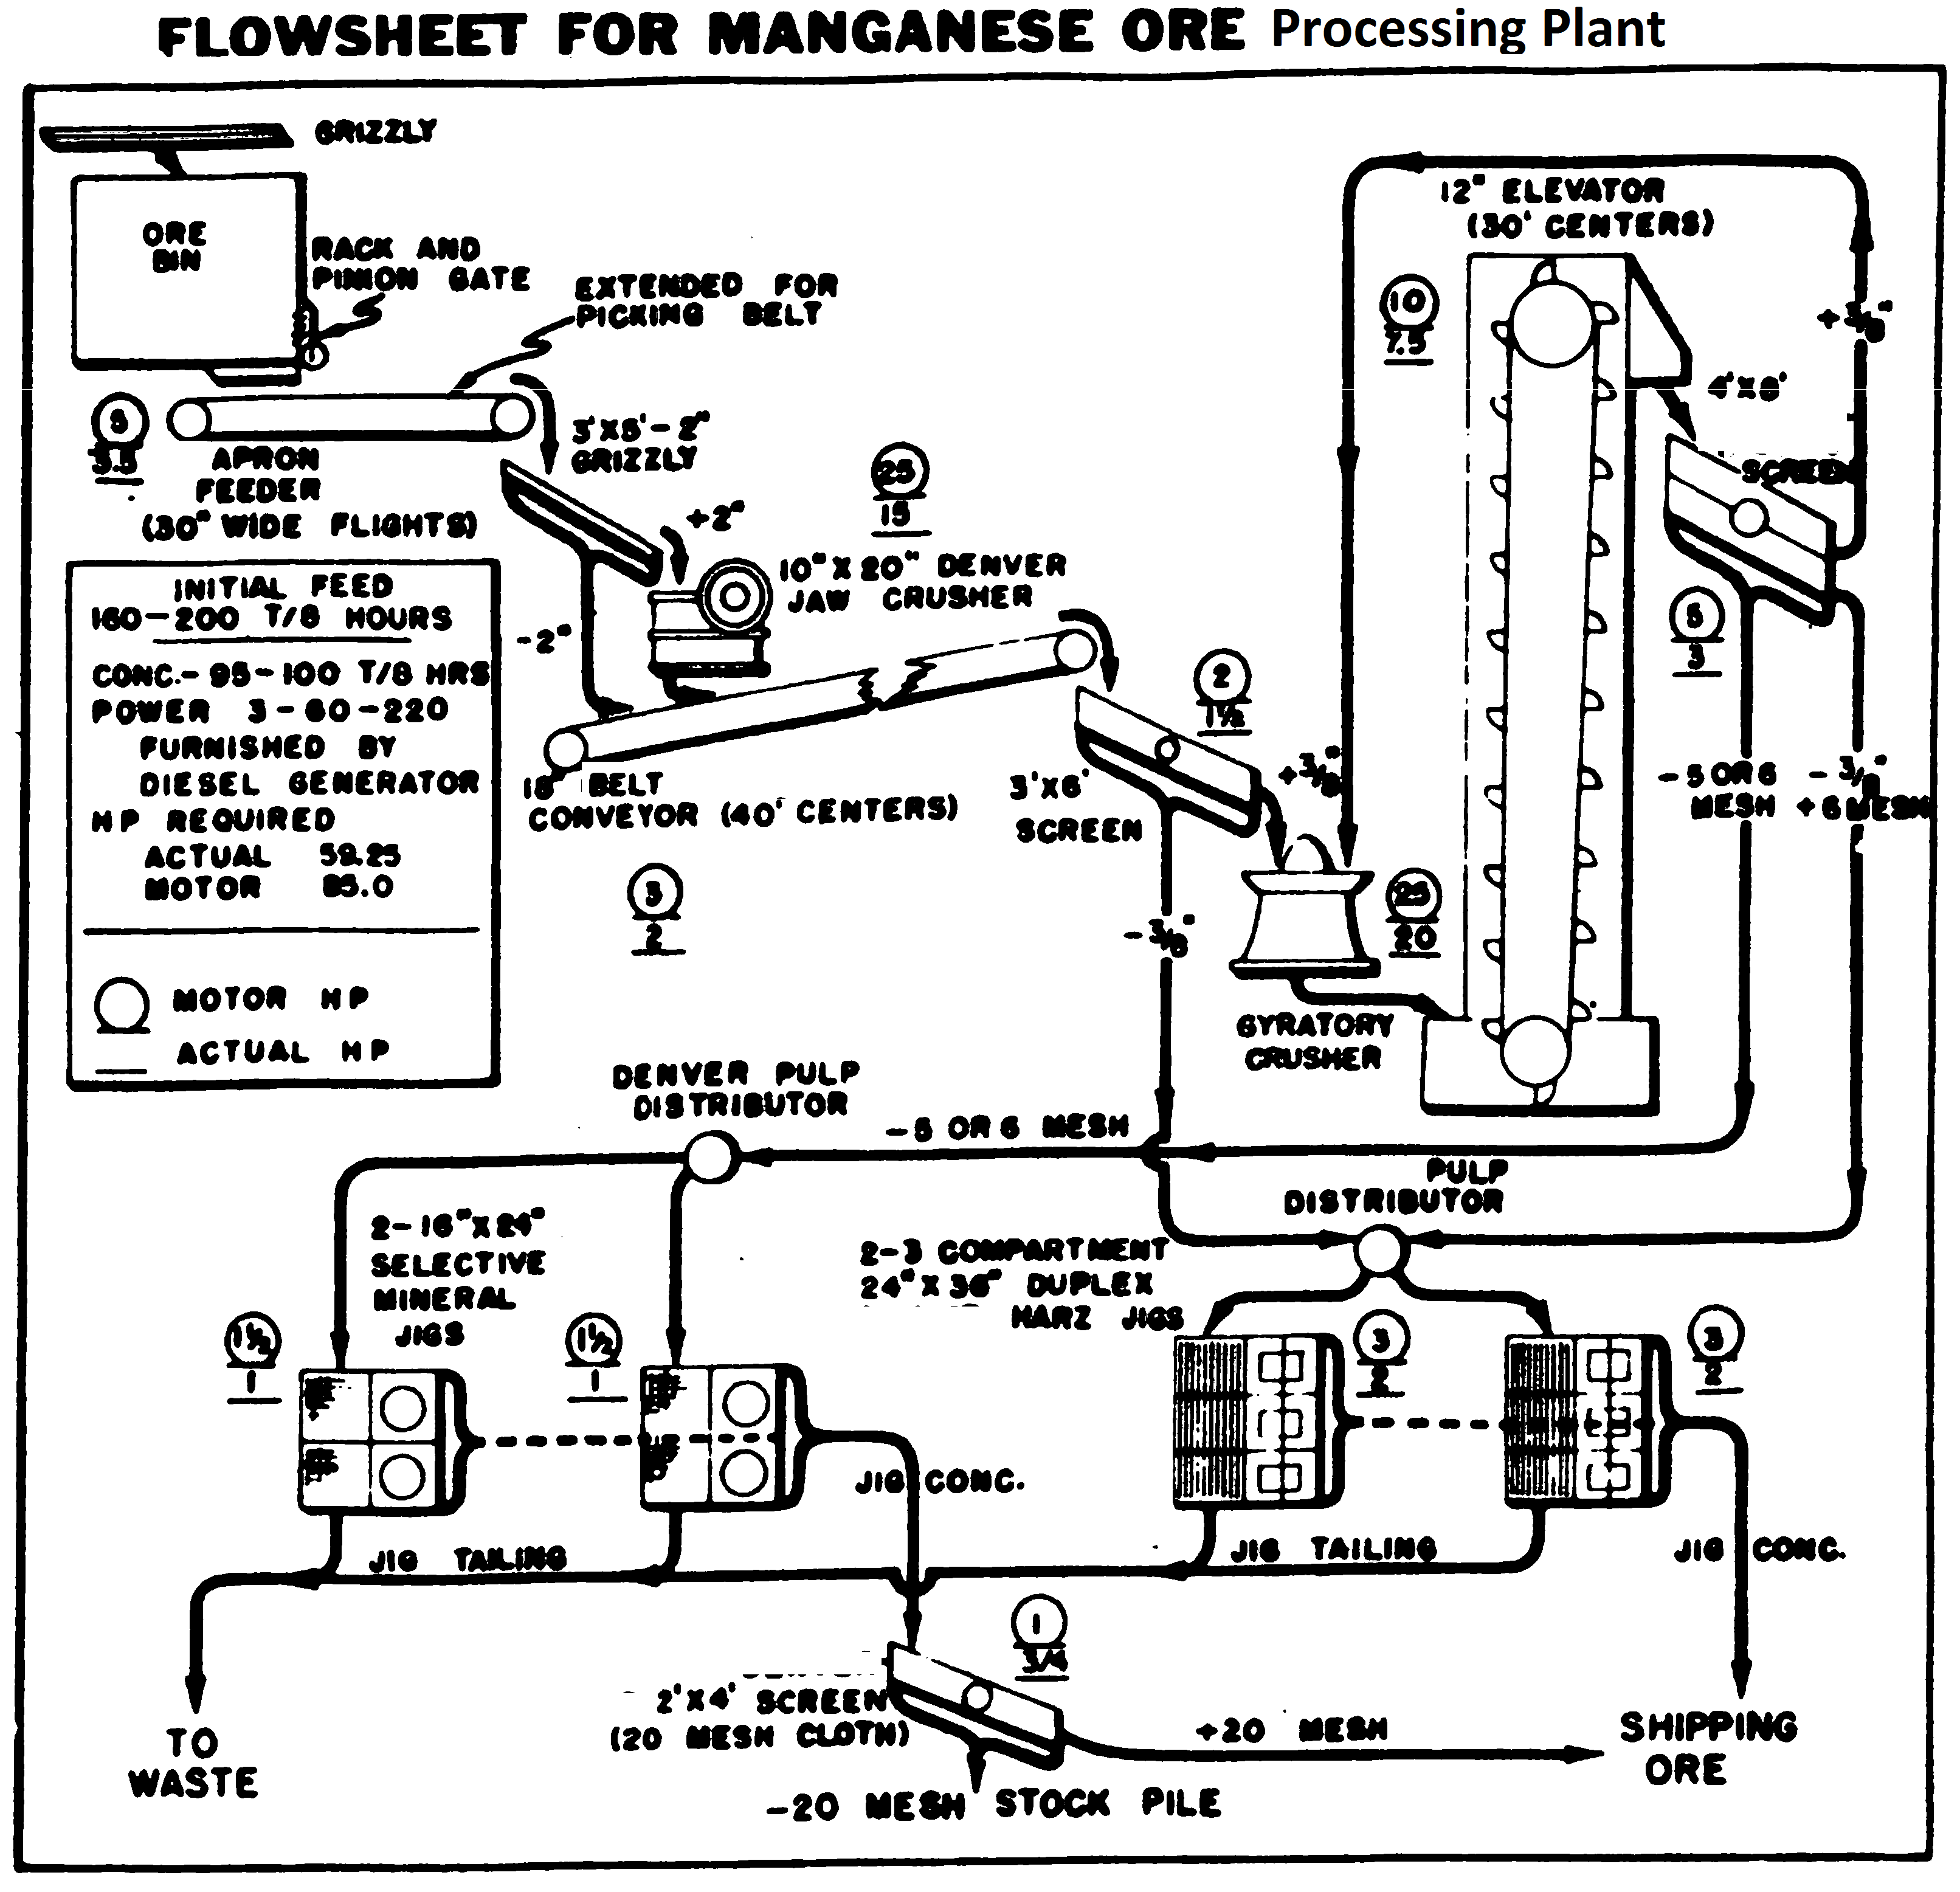 Manganese Ore Processing Flowsheet